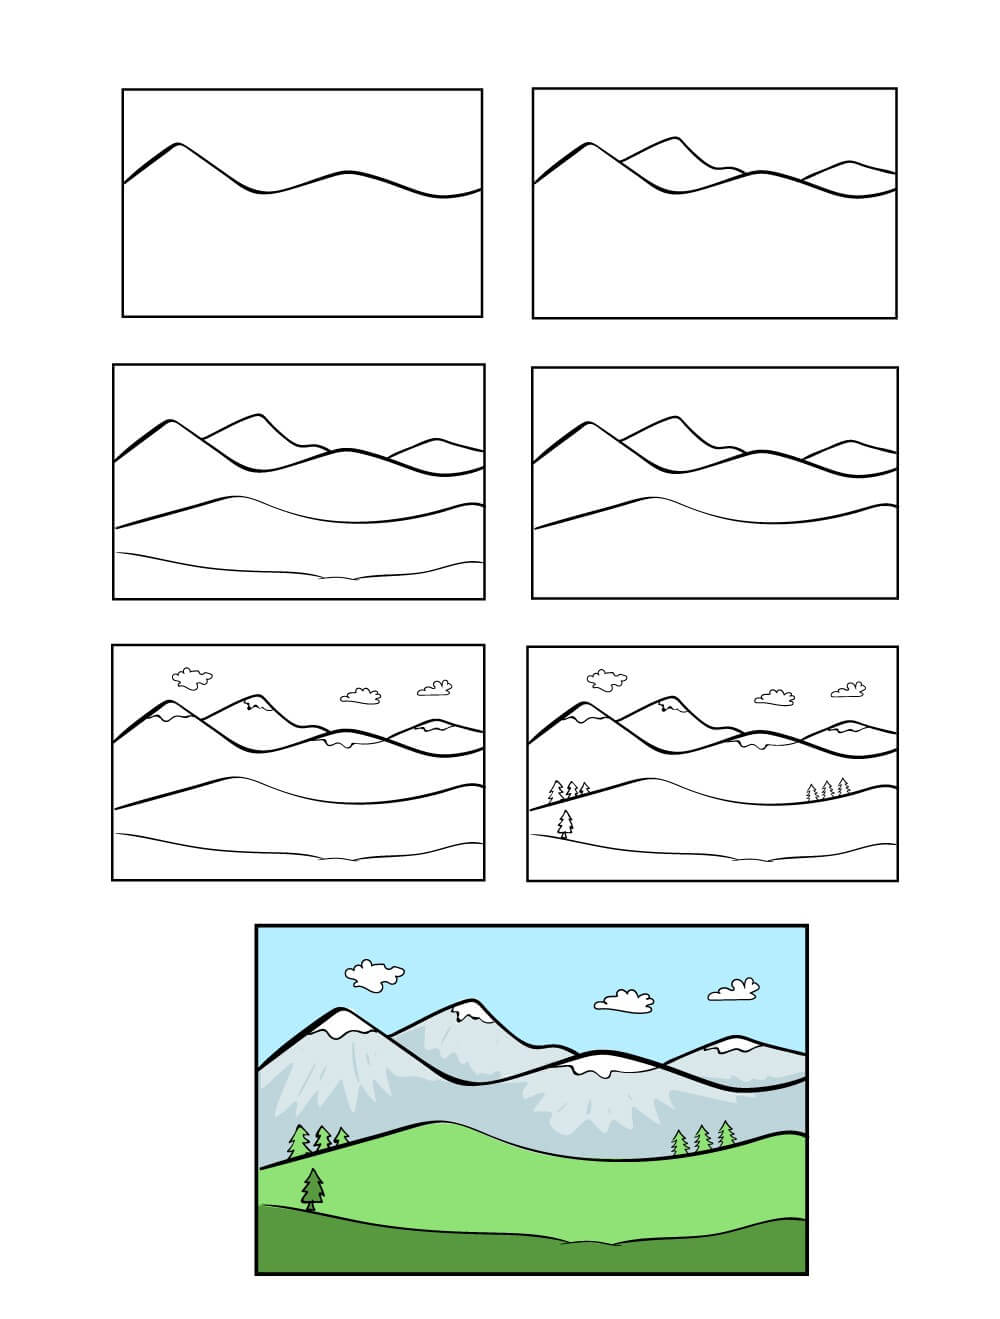 Dağlar fikri (10) çizimi